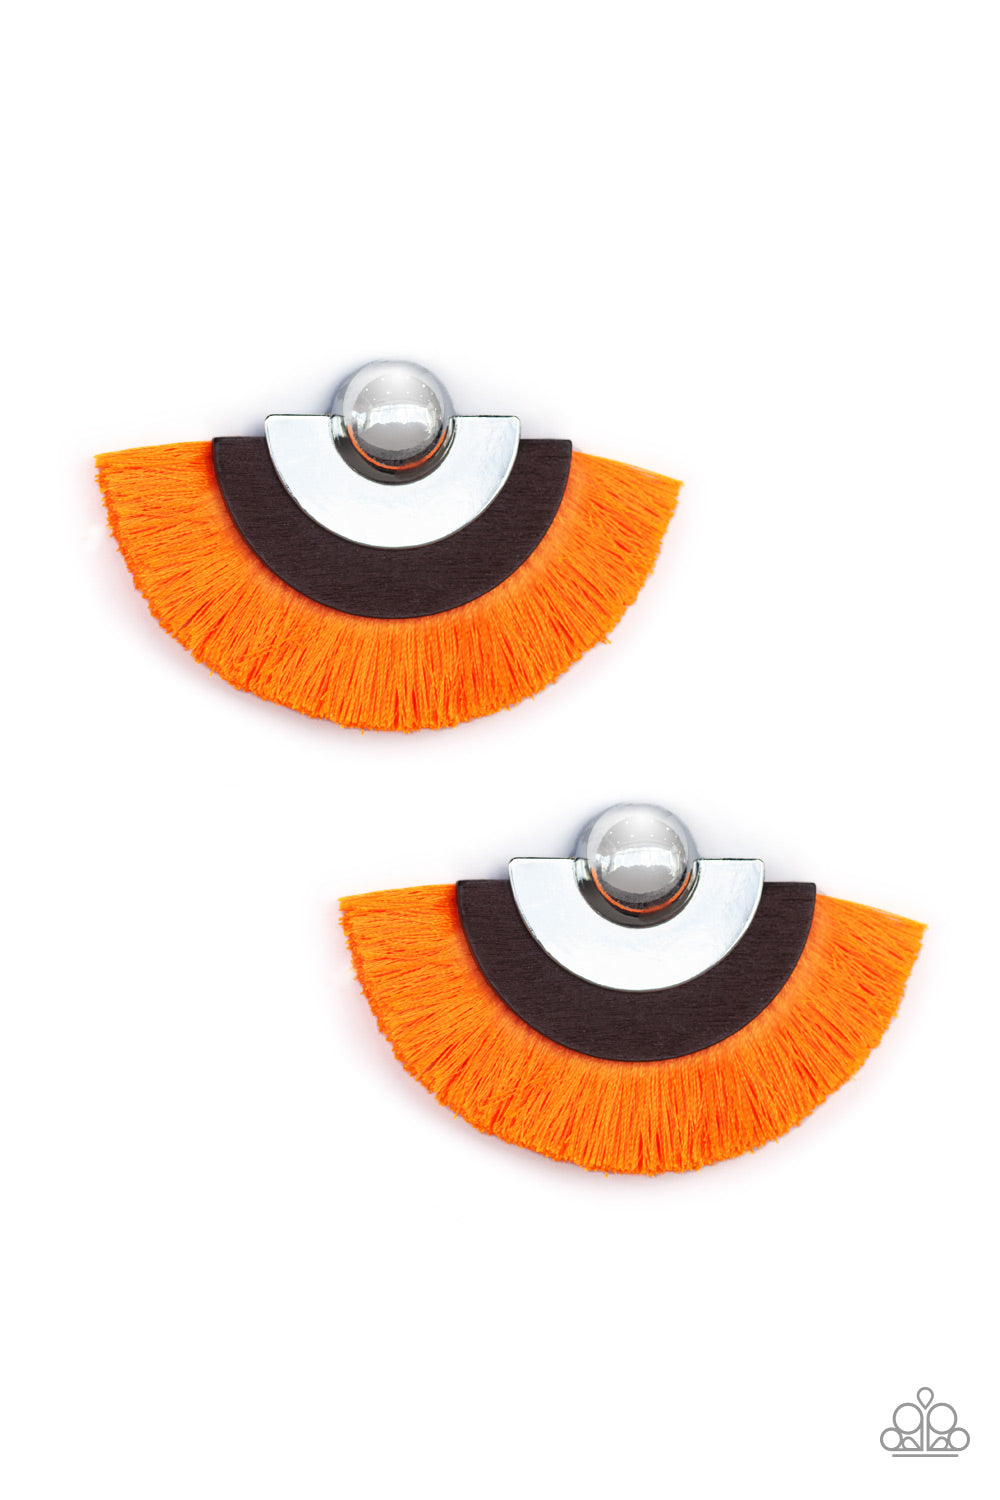 Paparazzi Accessories -  Fan The FLAMBOYANCE - Orange Earrings